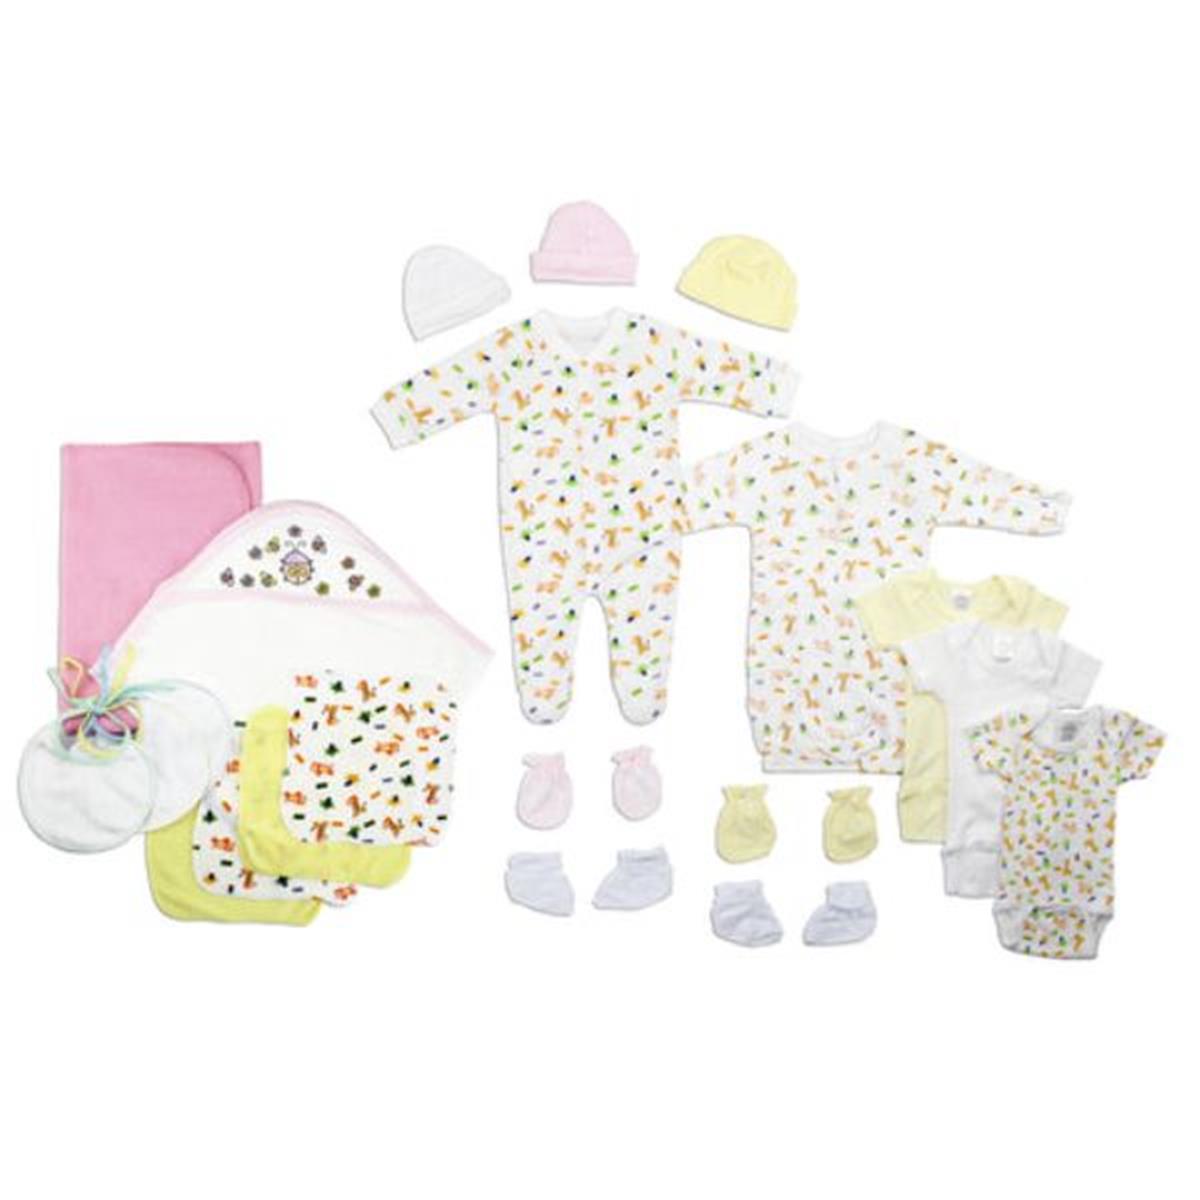 Bambini LS-0121 Newborn Baby Girls Layette Baby Shower Gift Set&#44; White & Pink - Newborn